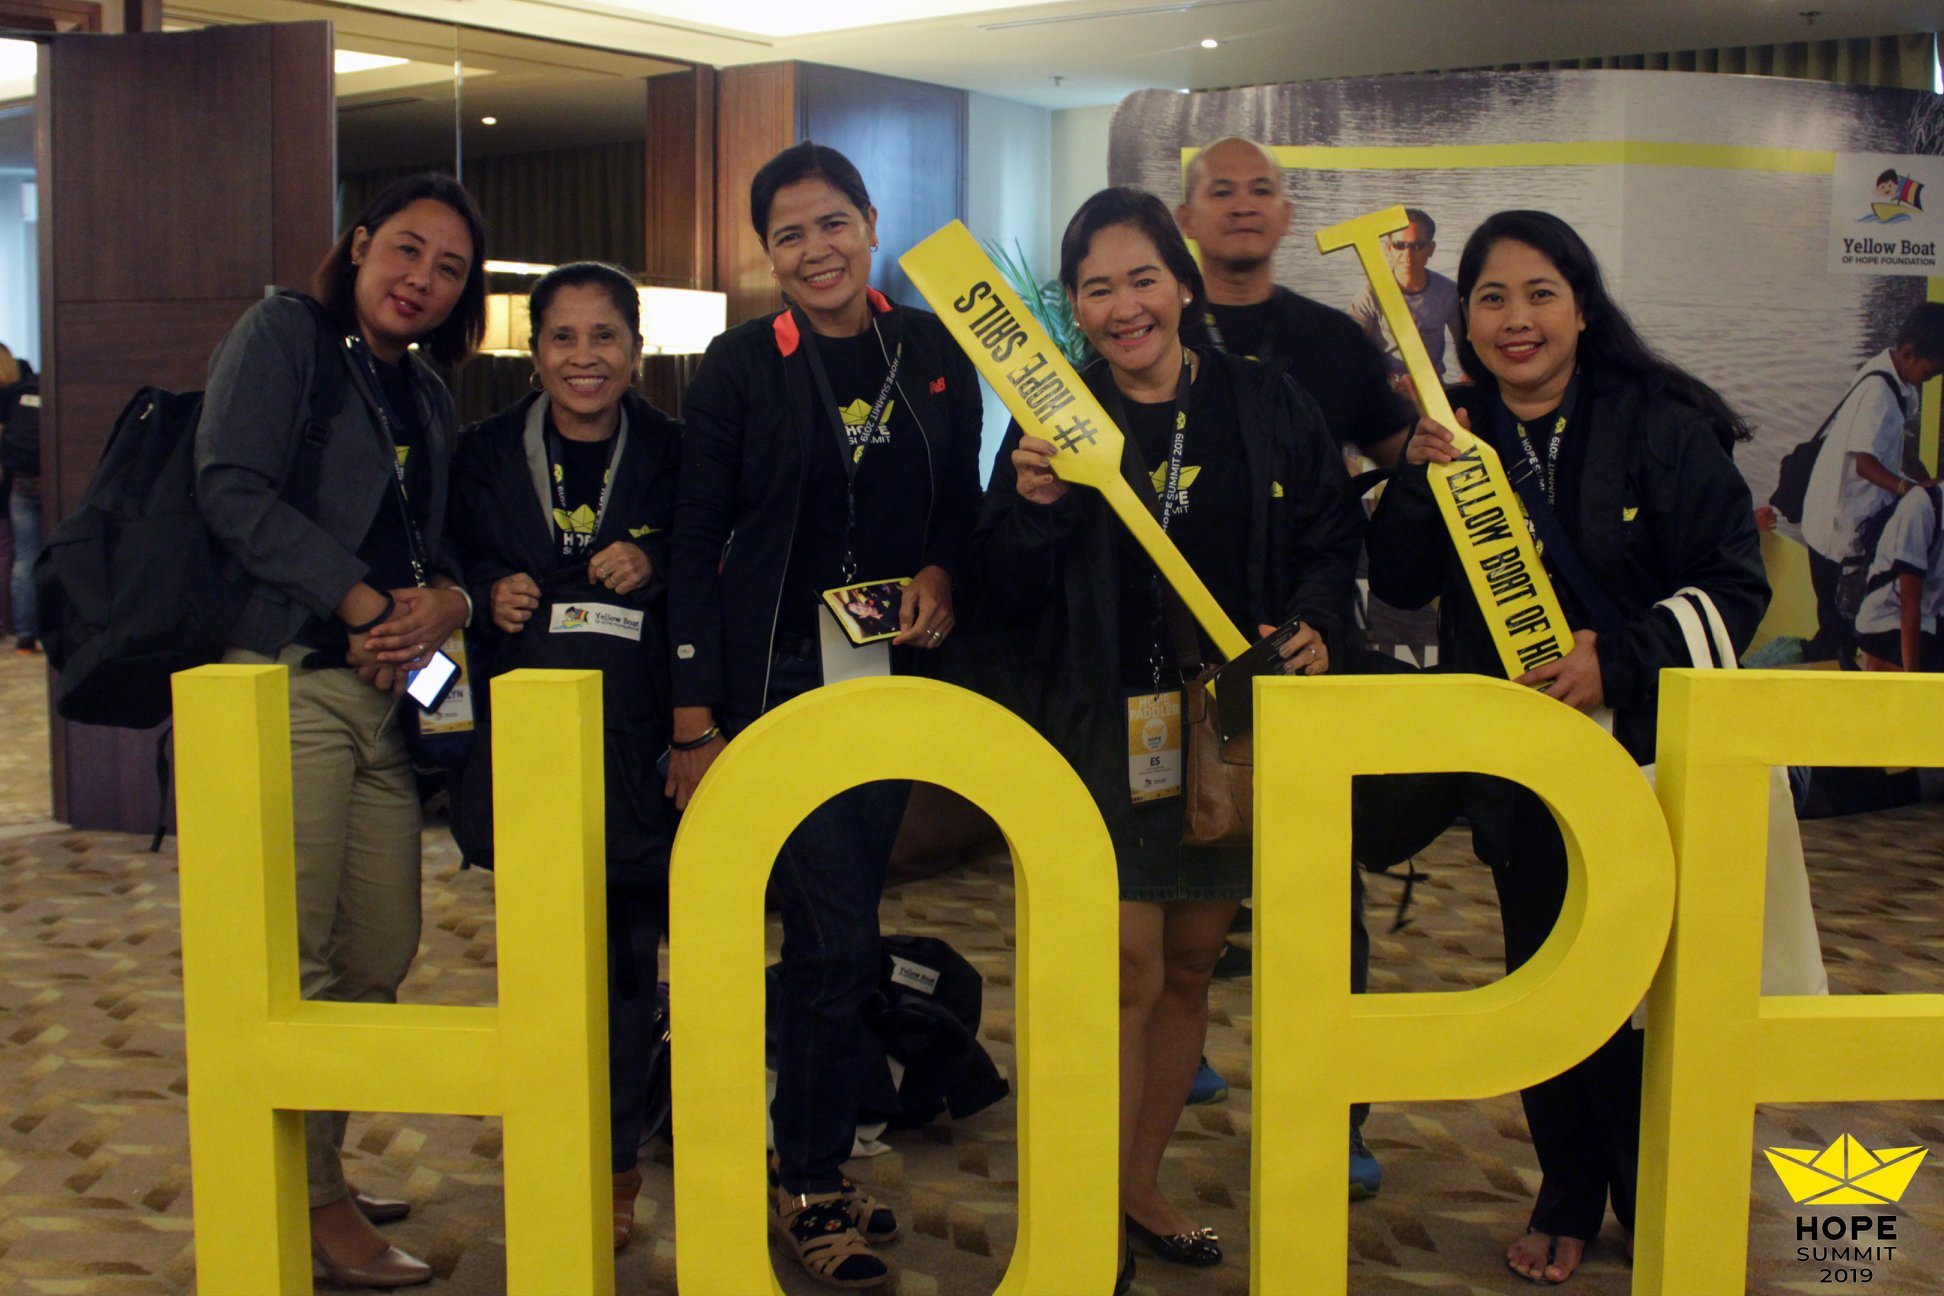 Hope Summit Yellow Boar Volunteers